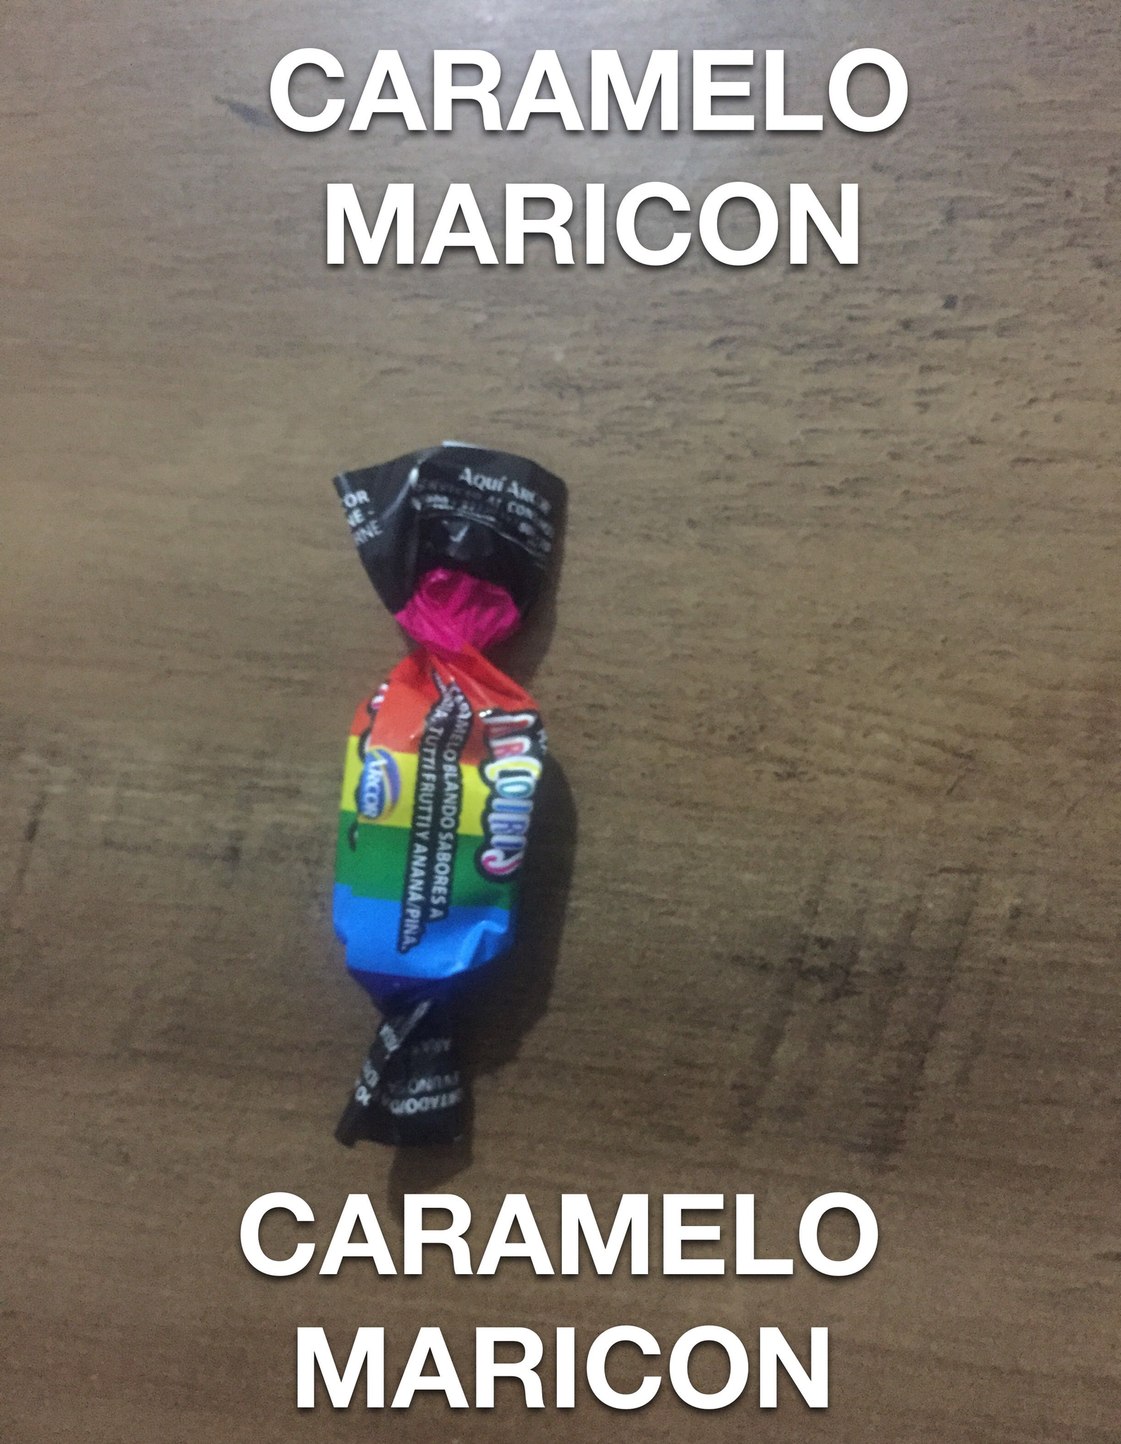 CARAMELO MARICON - meme